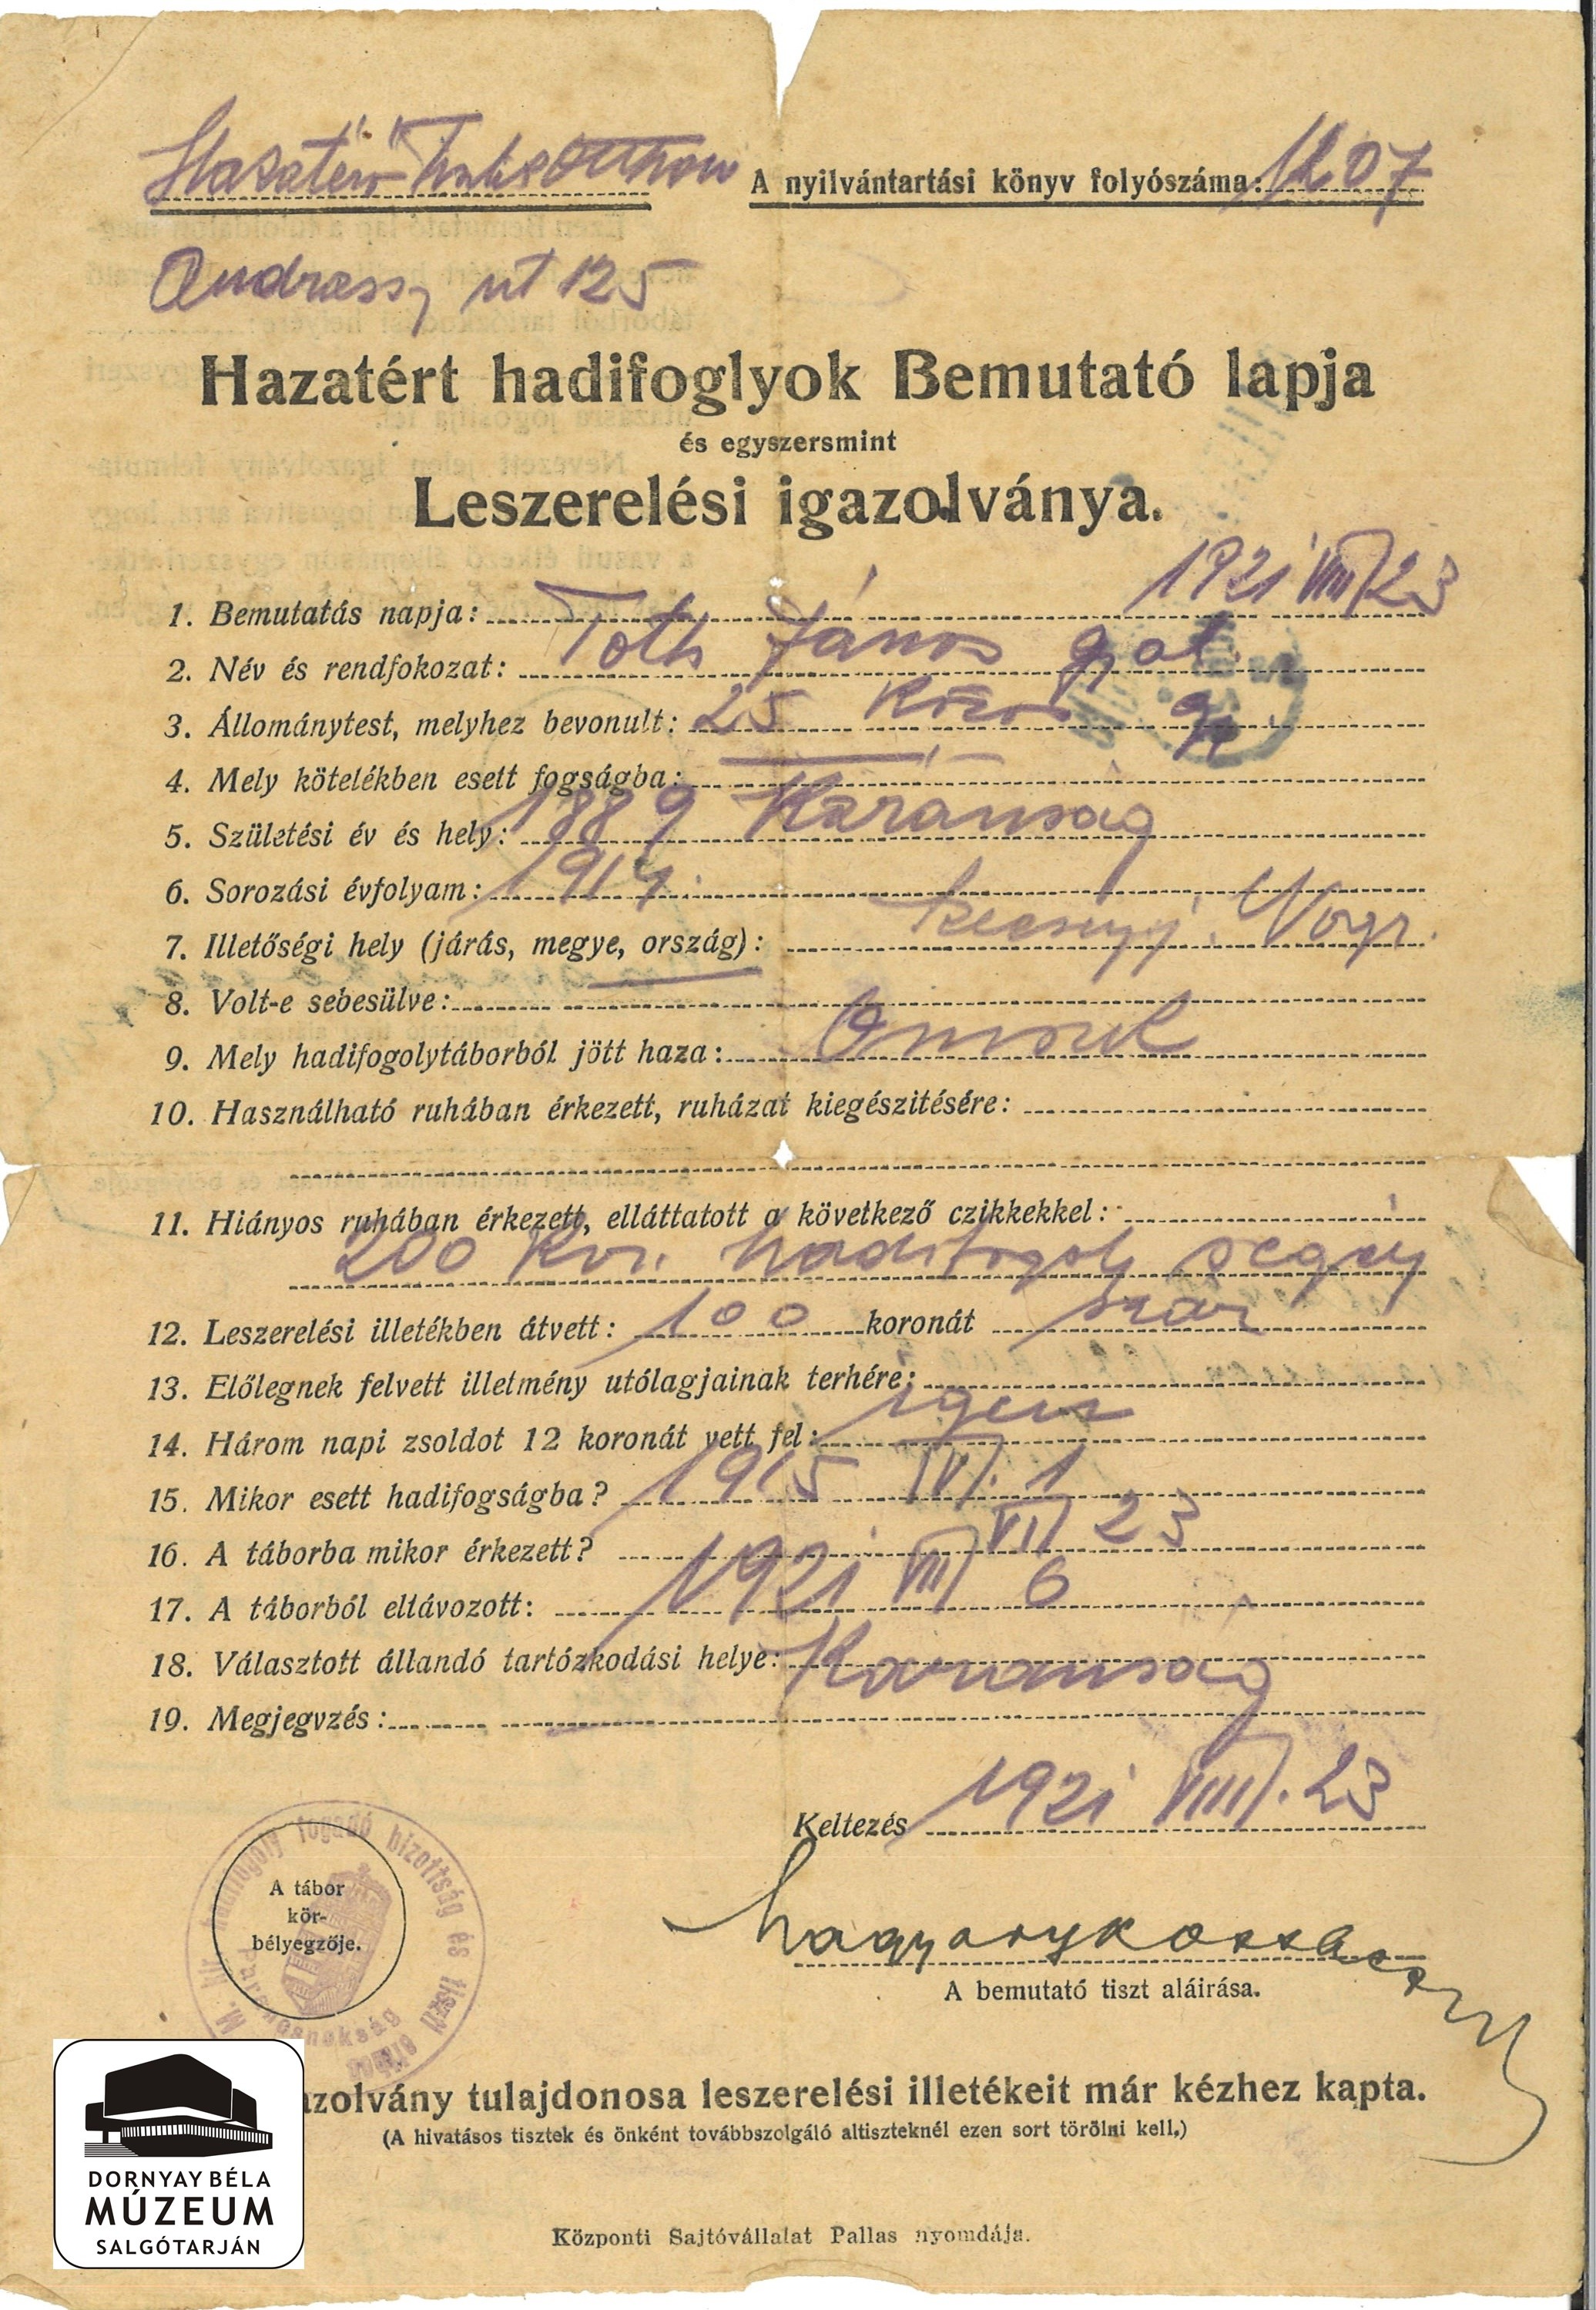 Hazáért hadifoglyok bemutató lapja - egyben leszerelési ig. (Dornyay Béla Múzeum, Salgótarján CC BY-NC-SA)